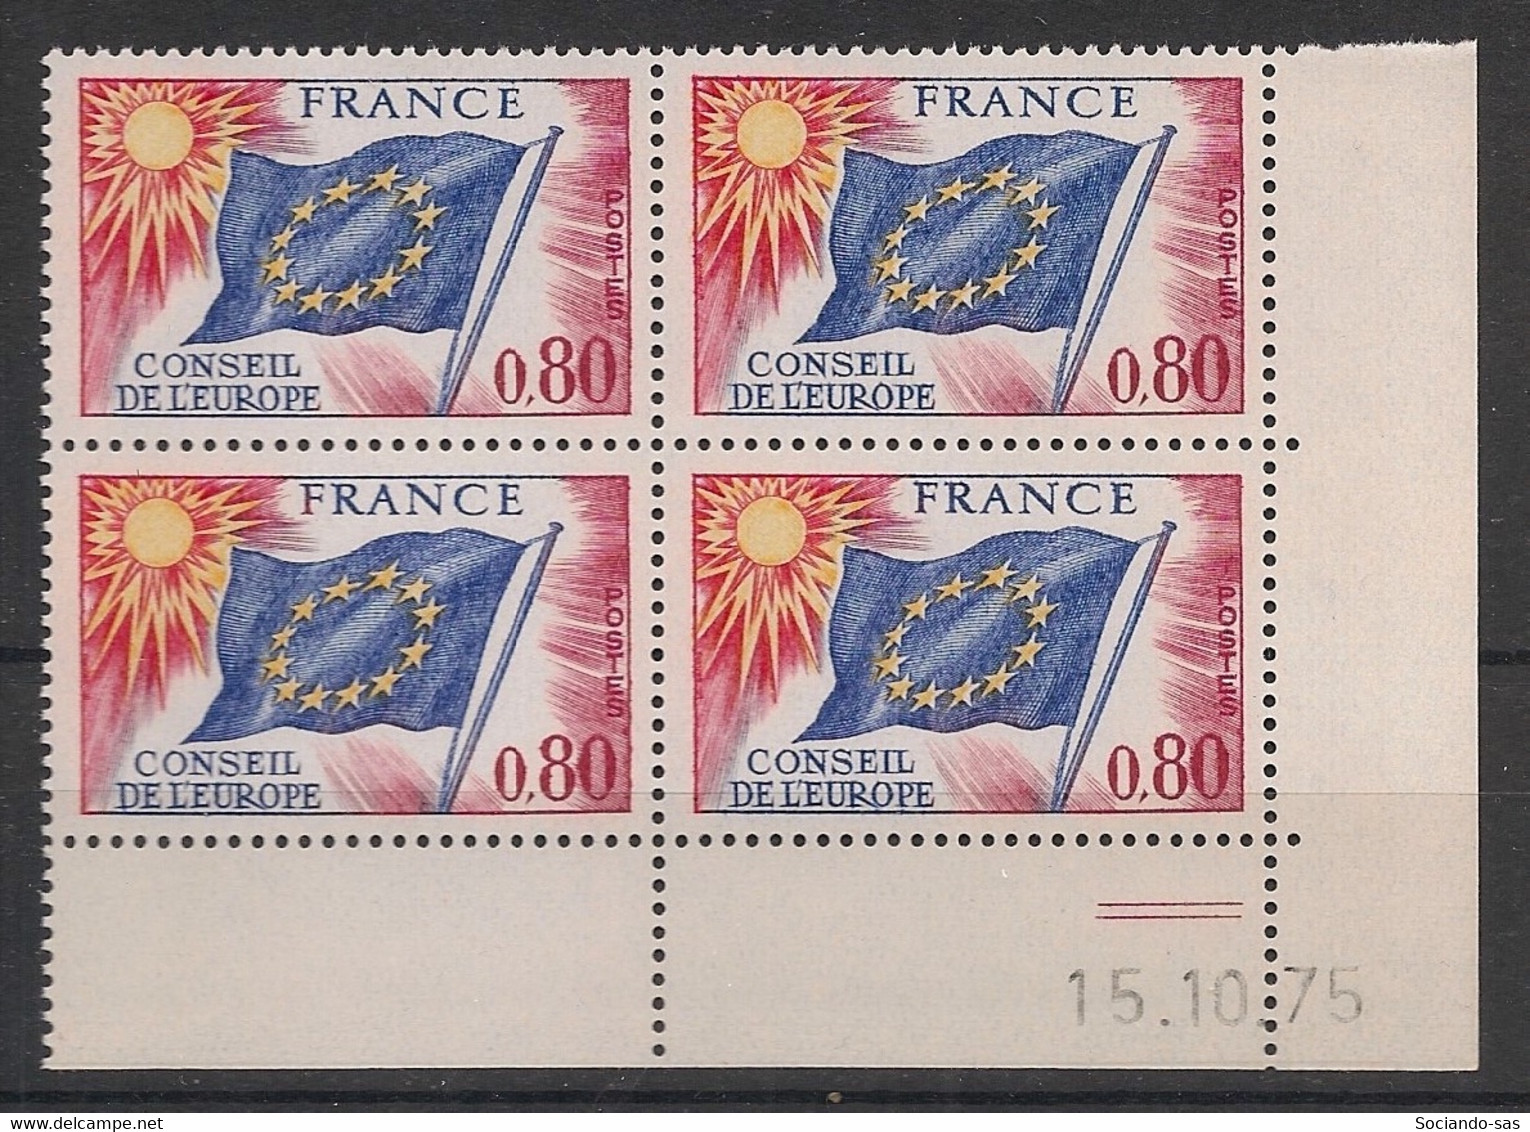 France - 1975 - Service N°Yv. 47 - Bloc De 4 Coin Daté - Neuf Luxe ** / MNH / Postfrisch - Service